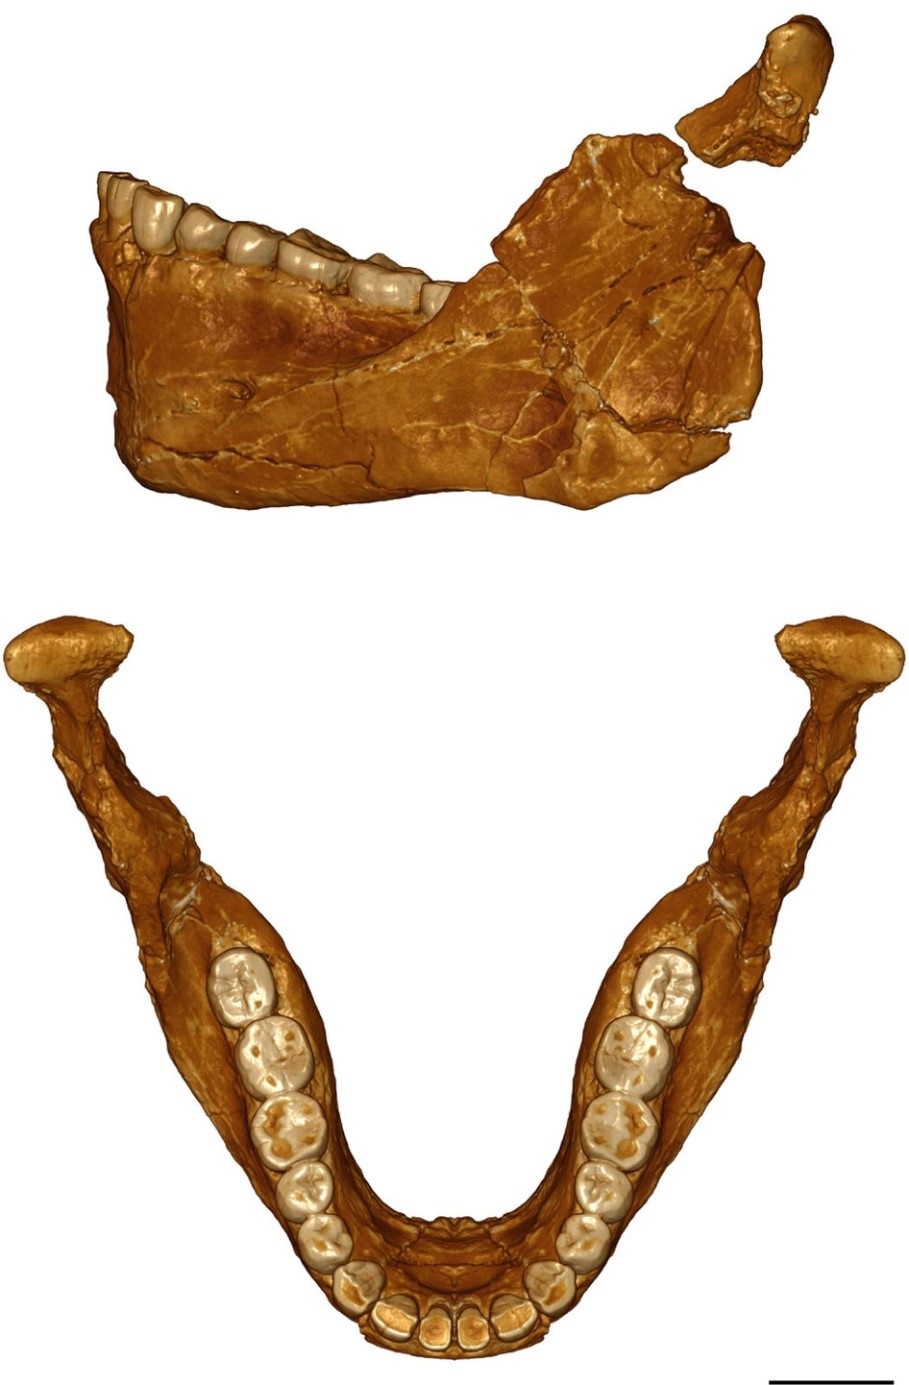 بعض الحفريات المكتشفة في جبل إيغود (نيتشر)